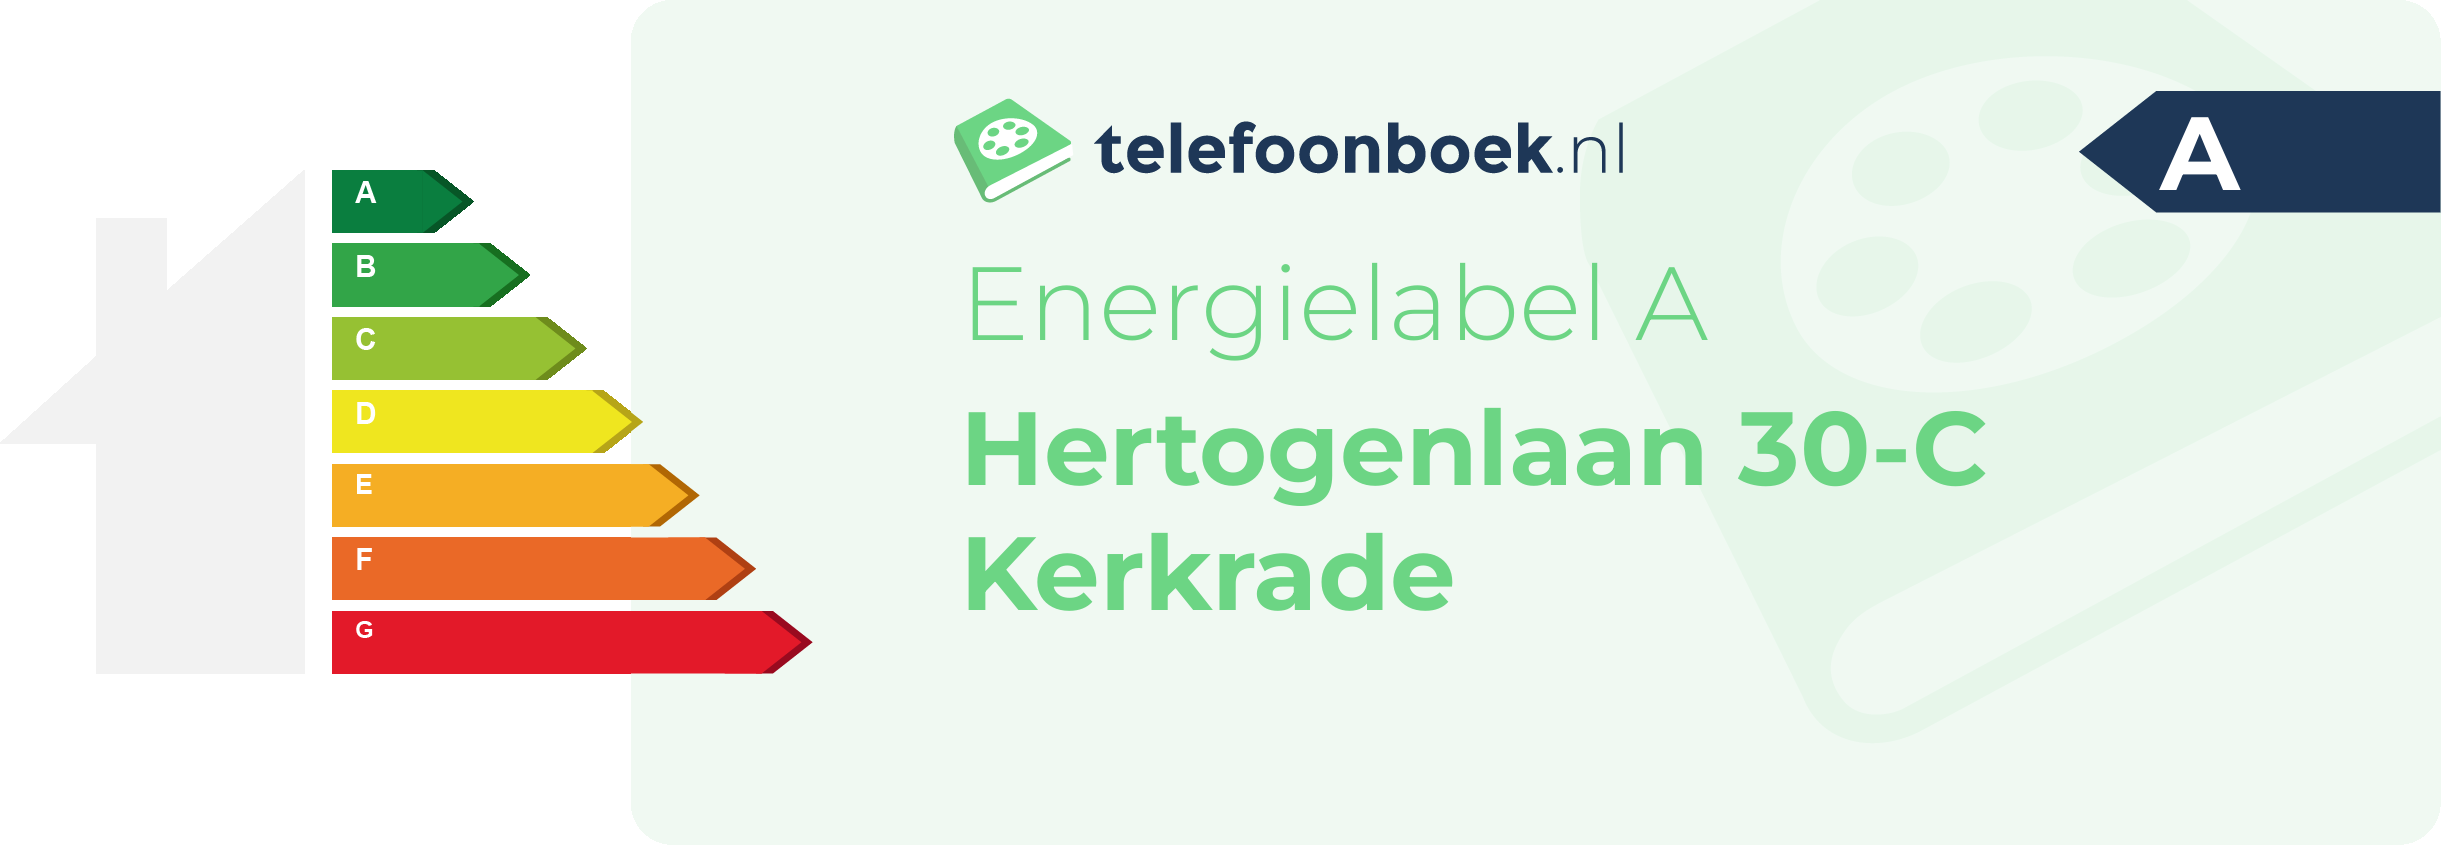 Energielabel Hertogenlaan 30-C Kerkrade